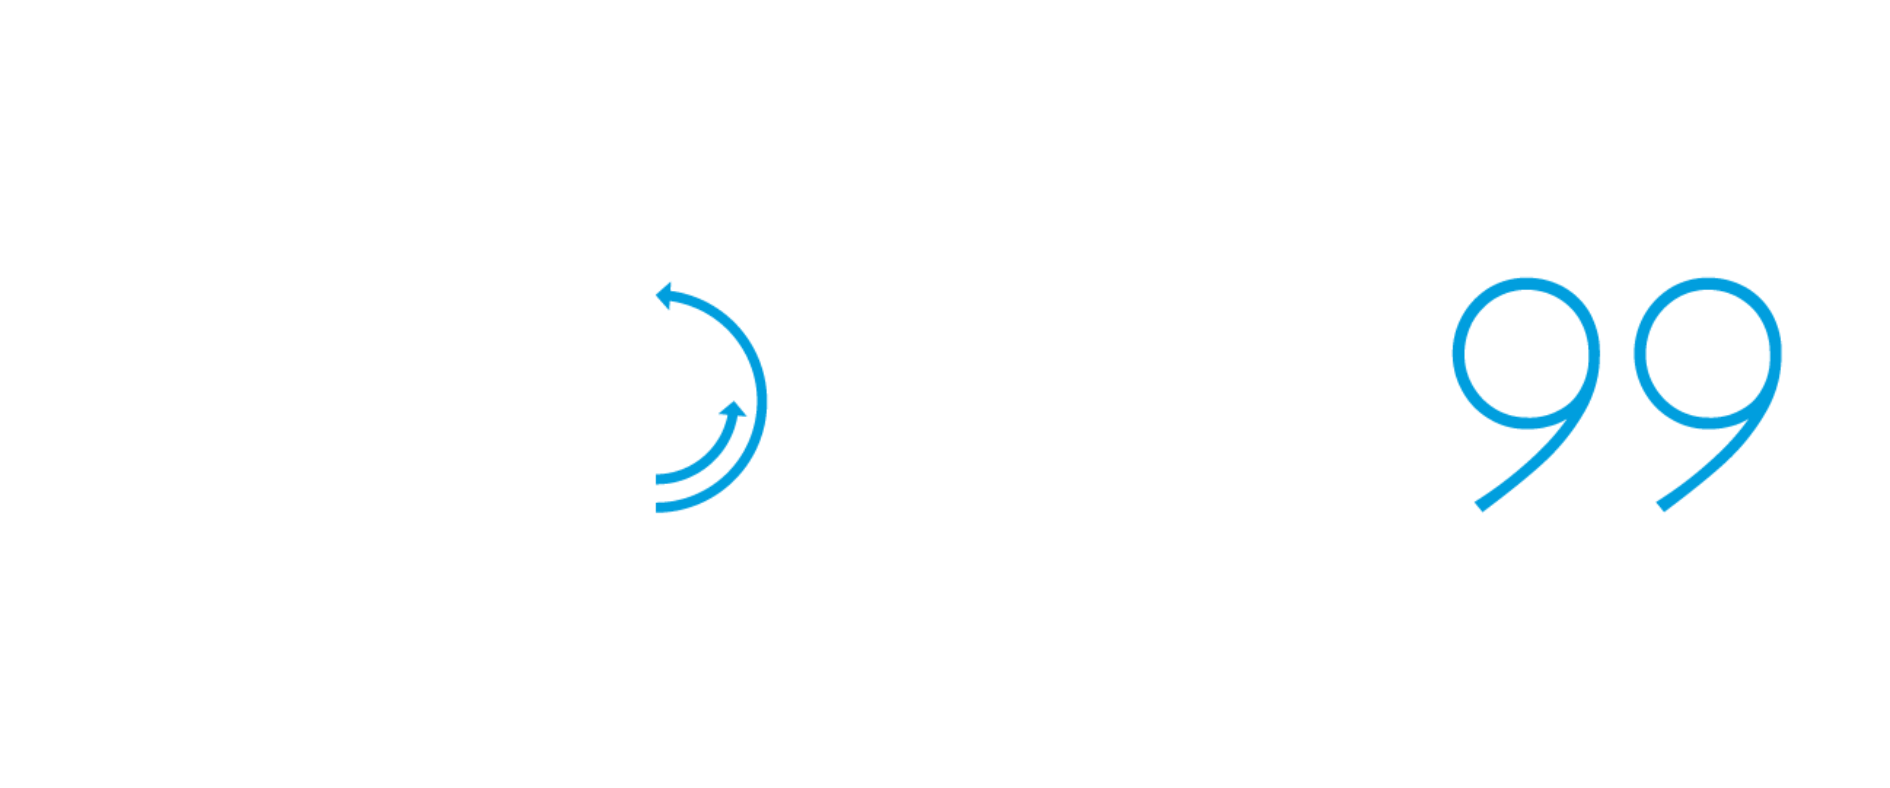 Growth99 logo